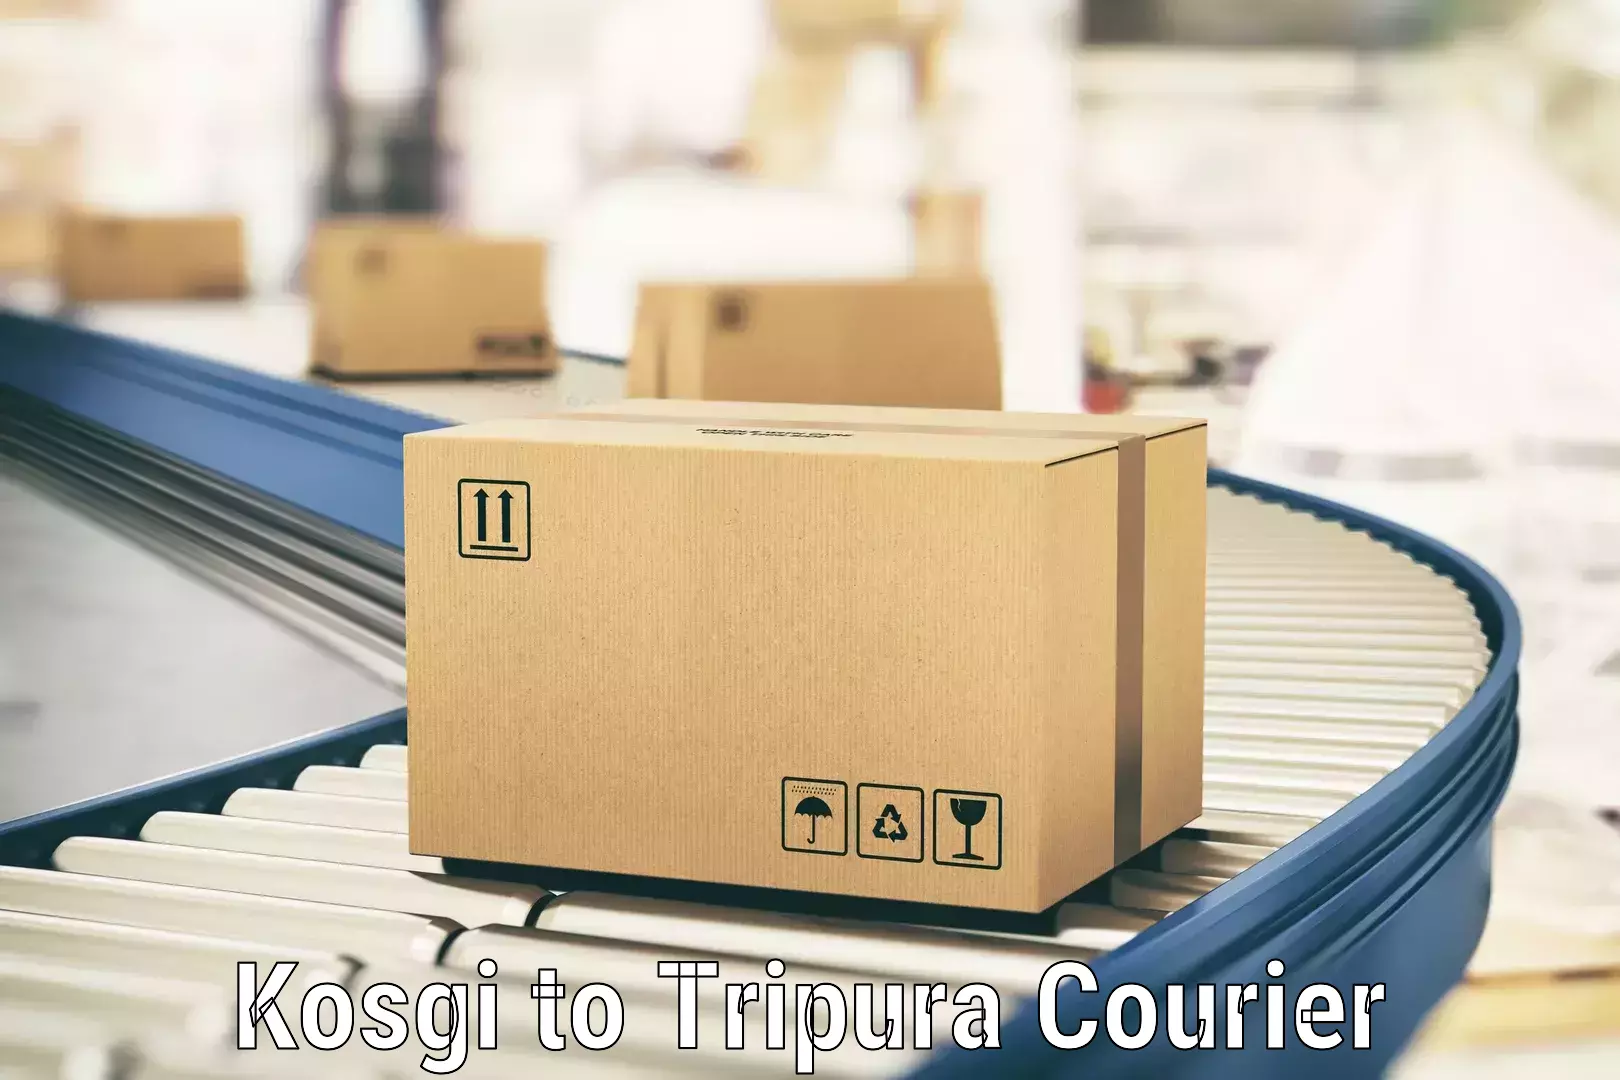 Reliable courier services Kosgi to Tripura